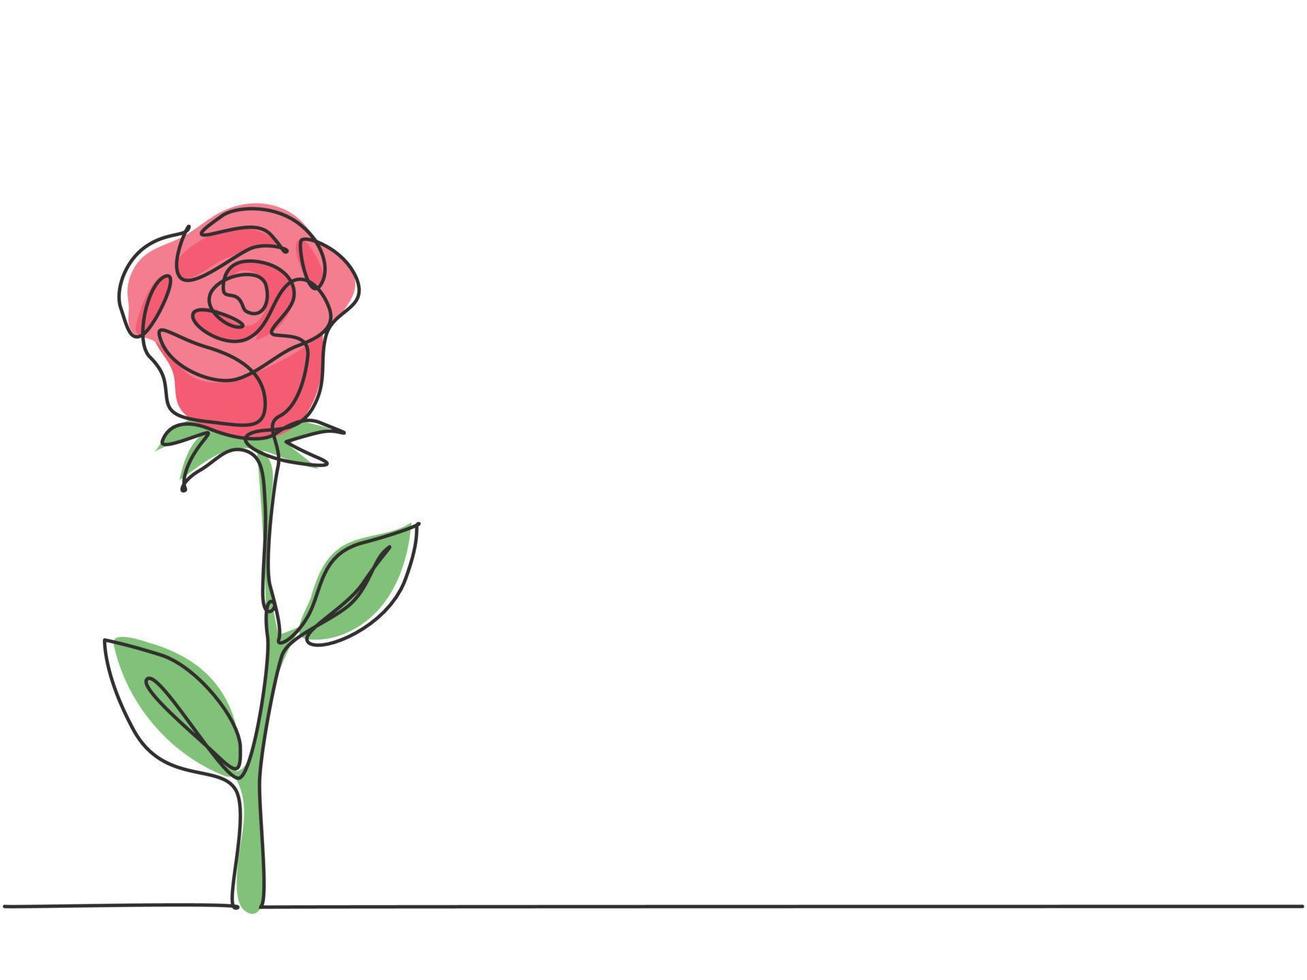 disegno a linea continua di un bellissimo fiore rosa romantico fresco. biglietto di auguri, invito, logo, banner, concetto di poster. illustrazione grafica vettoriale di disegno dinamico di una linea di disegno